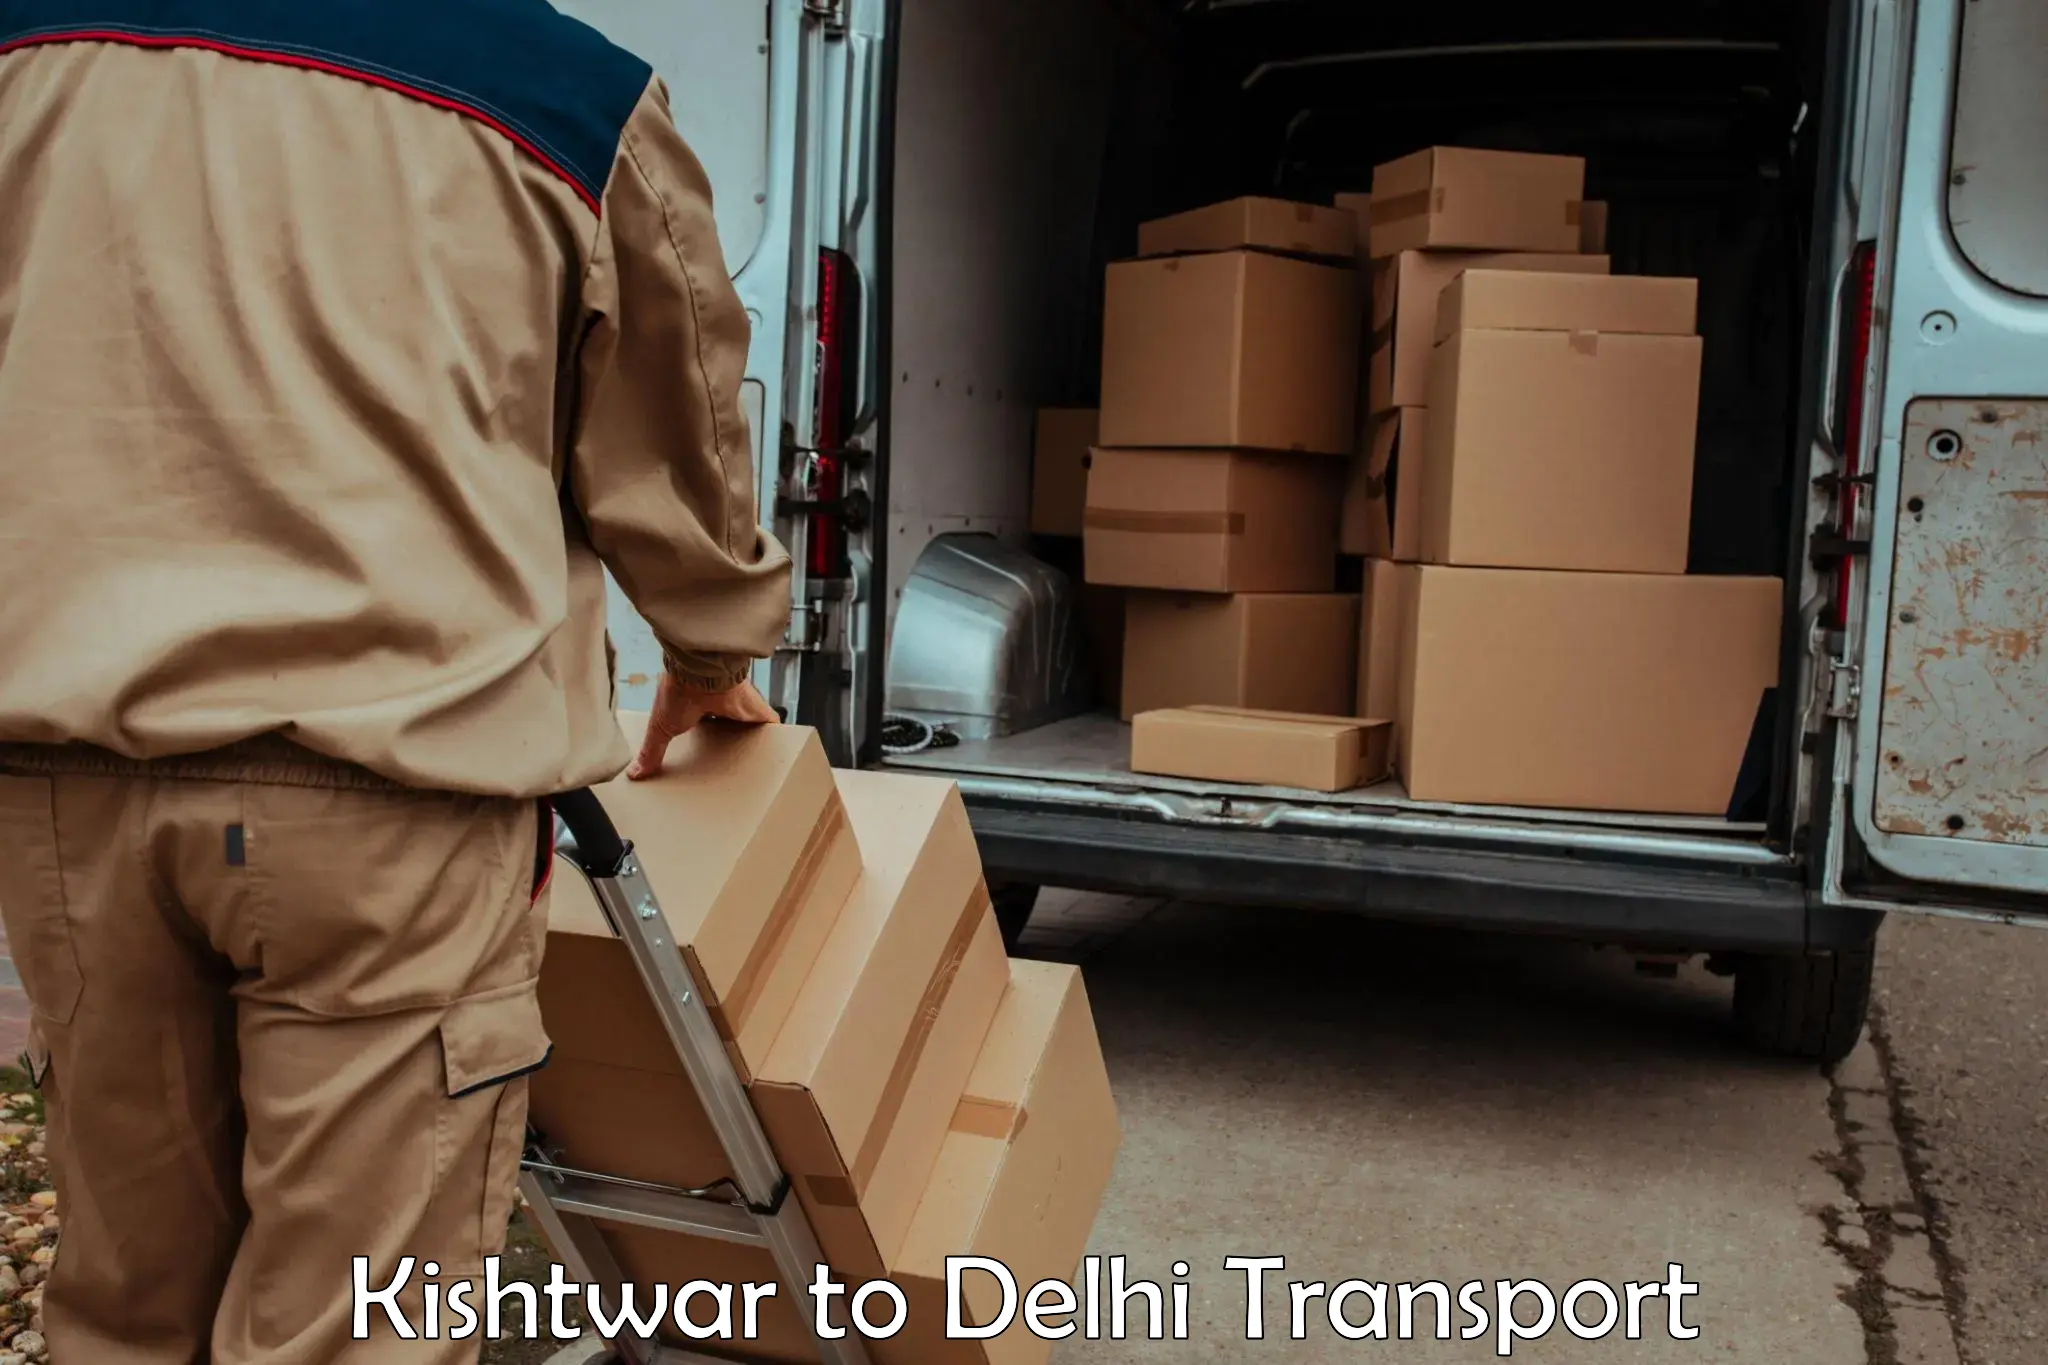 Parcel transport services Kishtwar to NCR